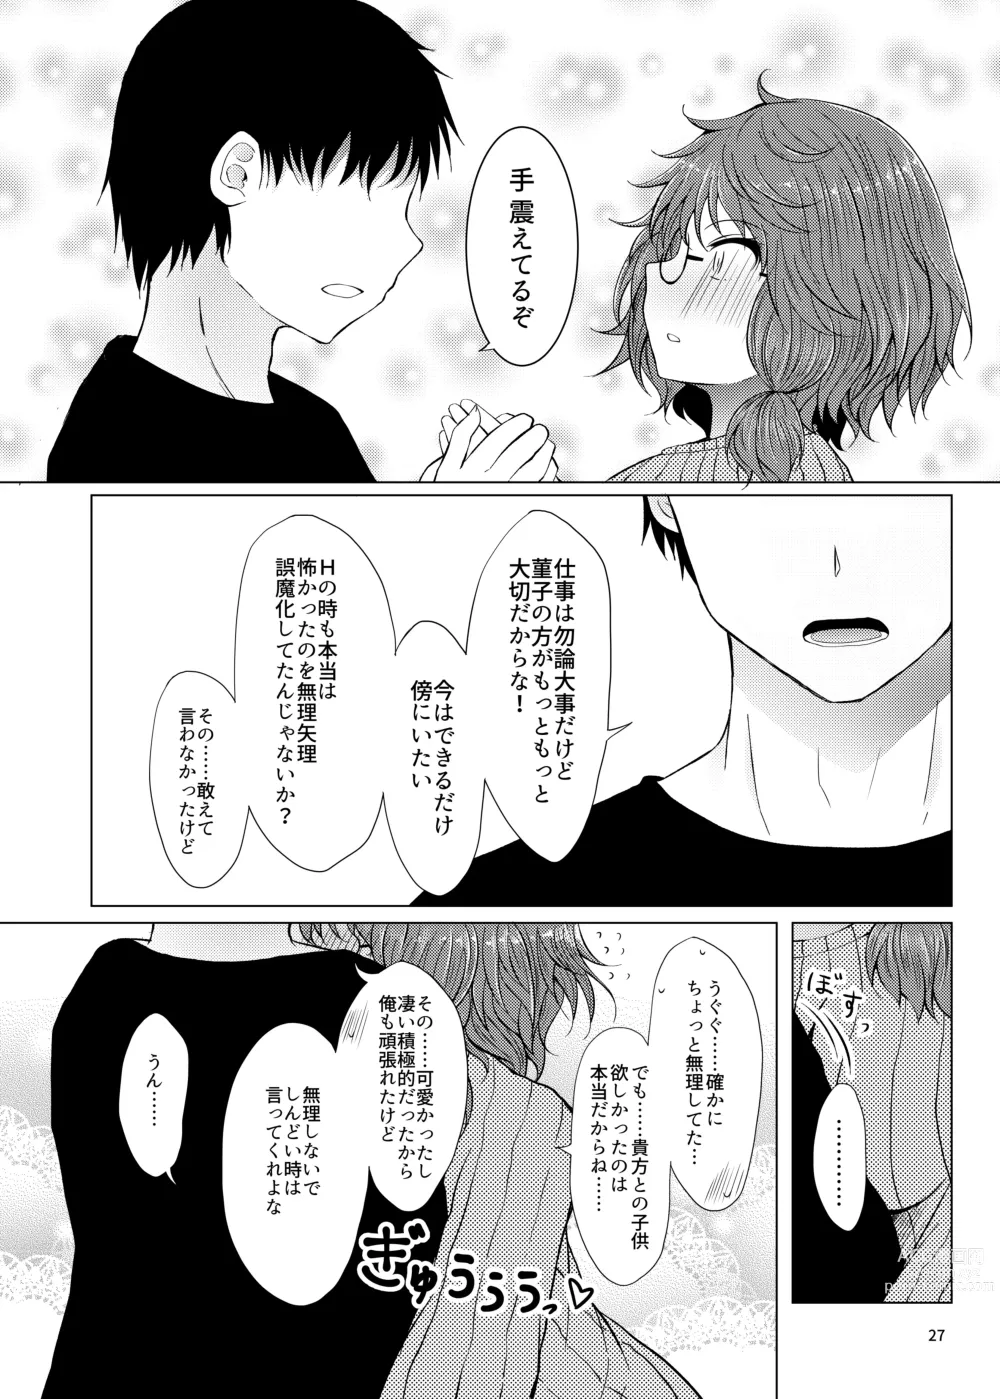 Page 26 of doujinshi Shinkon Sumireko